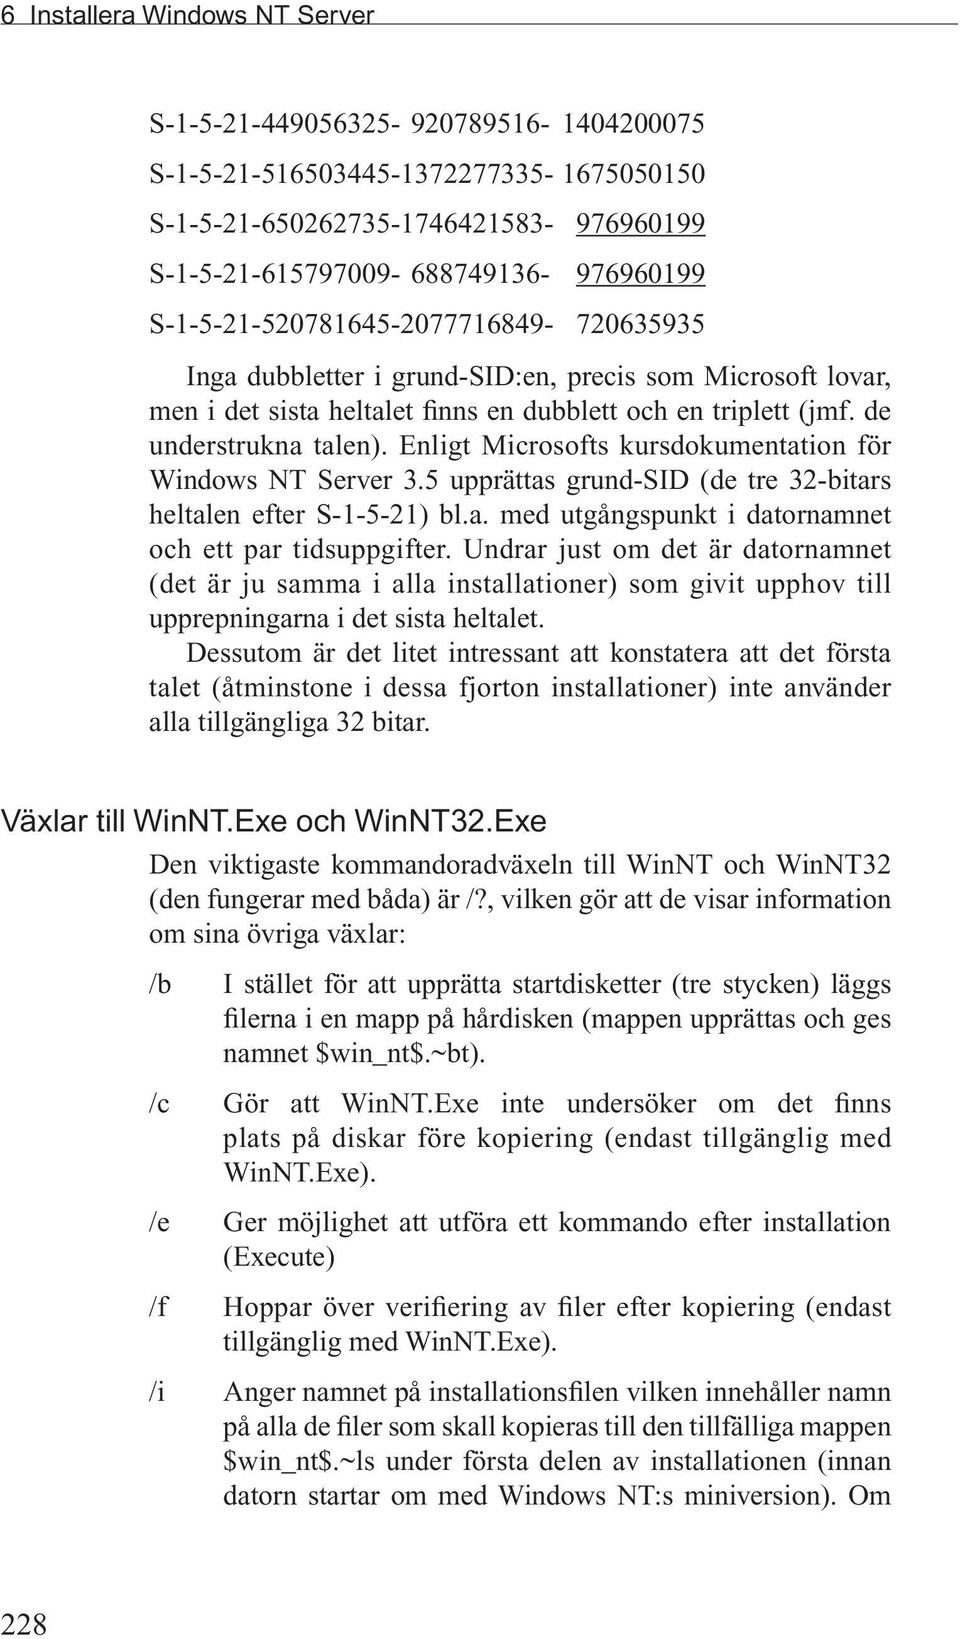 Enligt Microsofts kursdokumentation för Windows NT Server 3.5 upprättas grund-sid (de tre 32-bitars heltalen efter S-1-5-21) bl.a. med utgångspunkt i datornamnet och ett par tidsuppgifter.